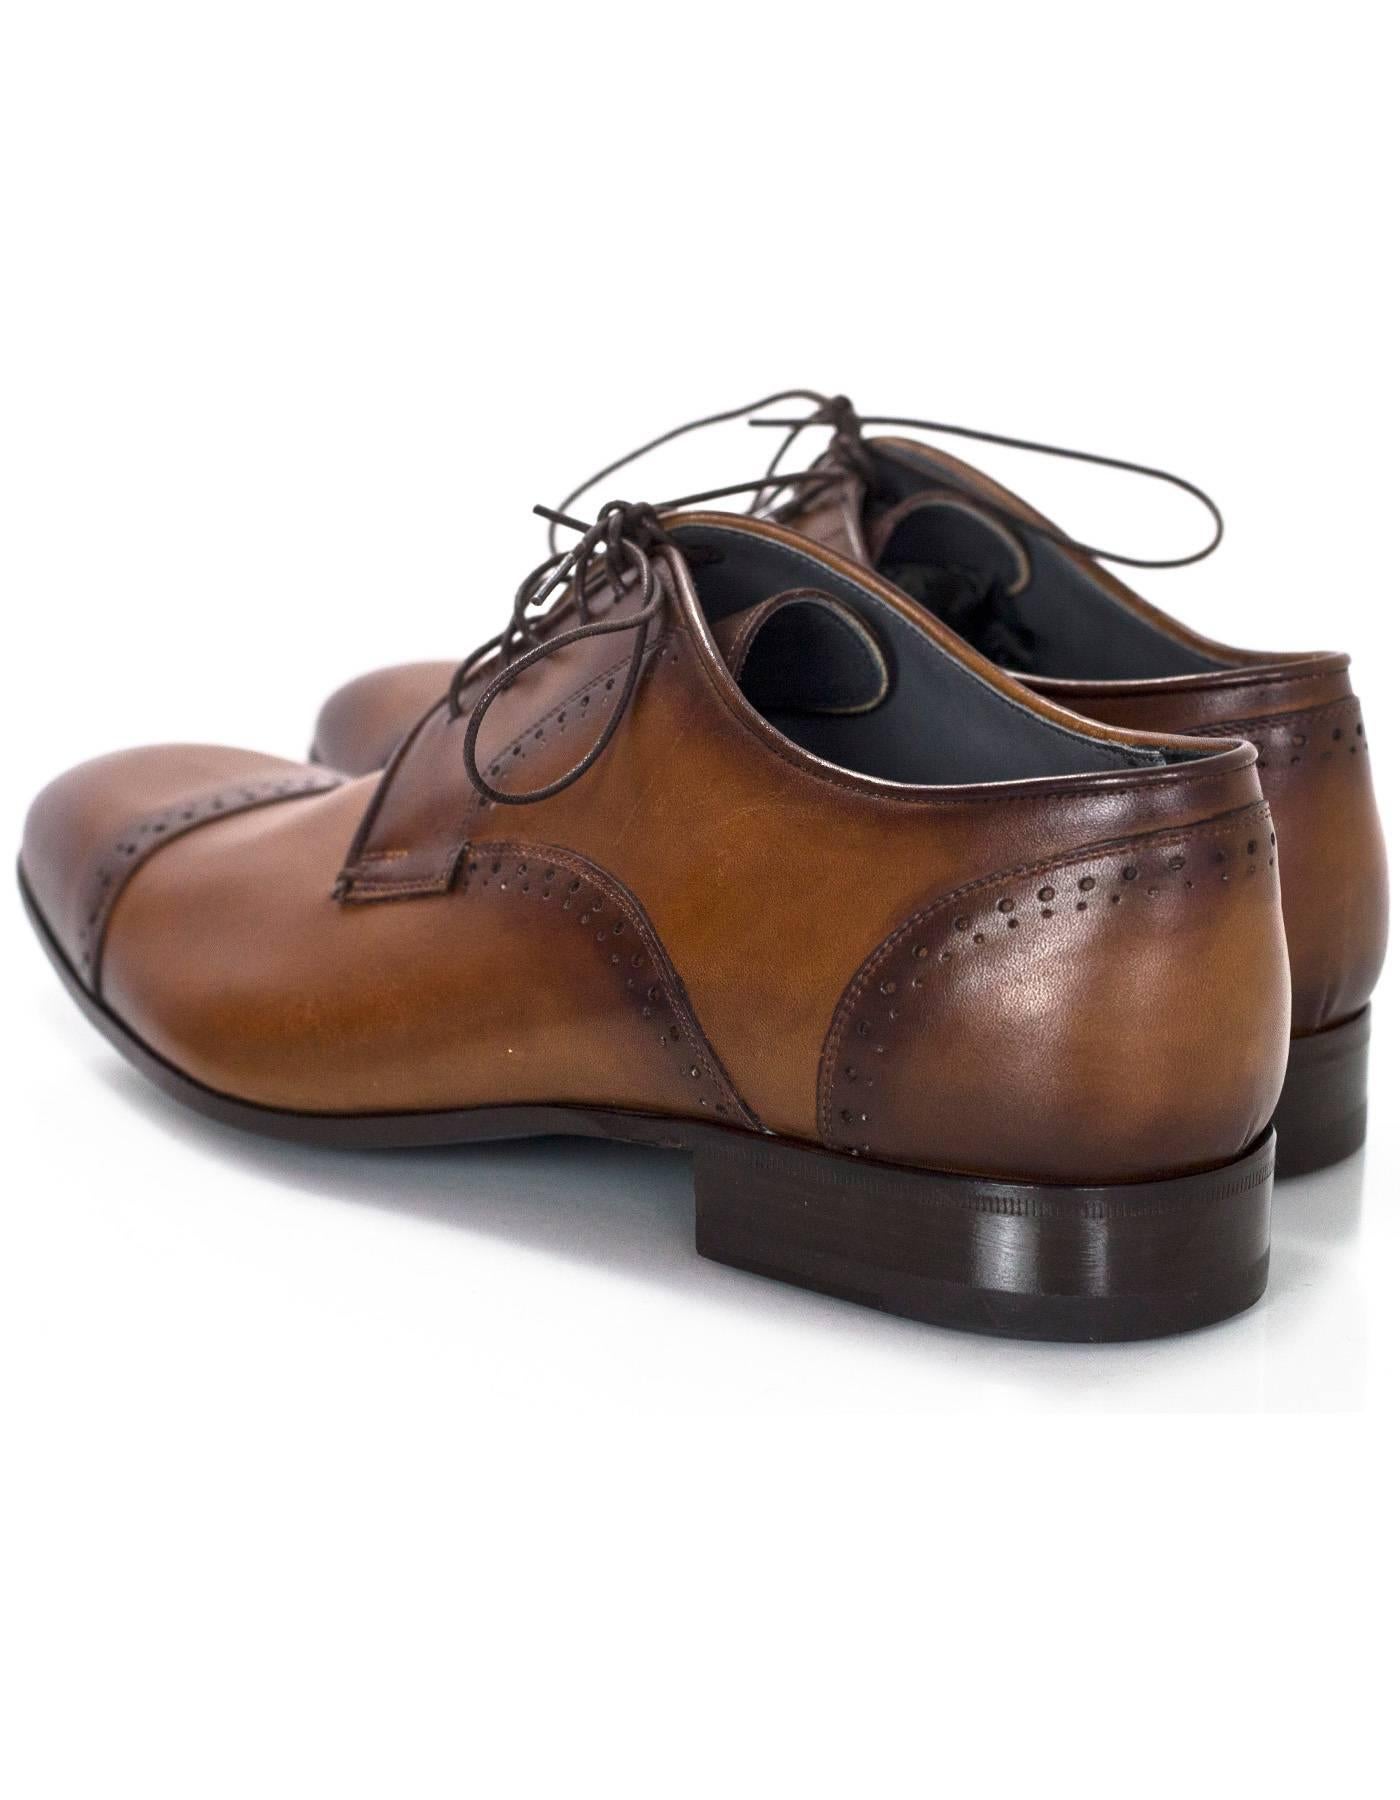 Black Lanvin Men's Brown Leather Oxford Shoes Sz 8 NIB